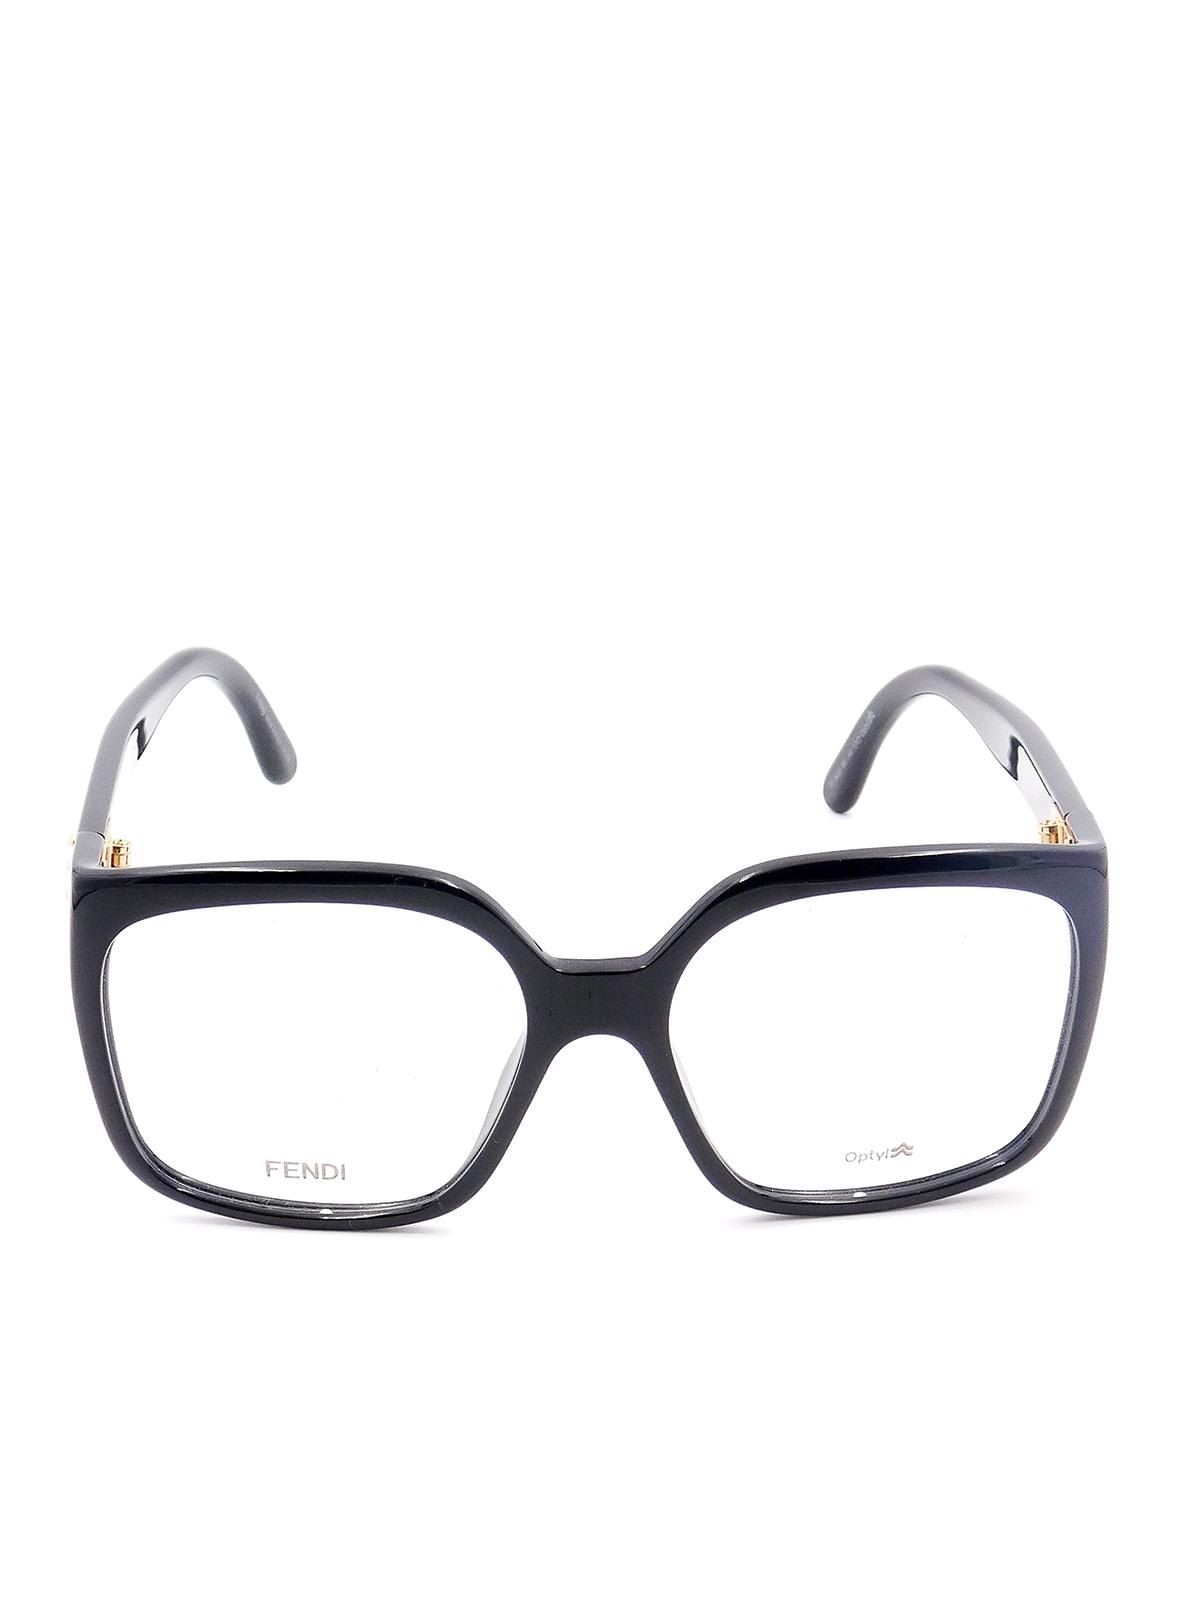 Fendi Optyl Squared Eyeglasses in Black for Men - Lyst